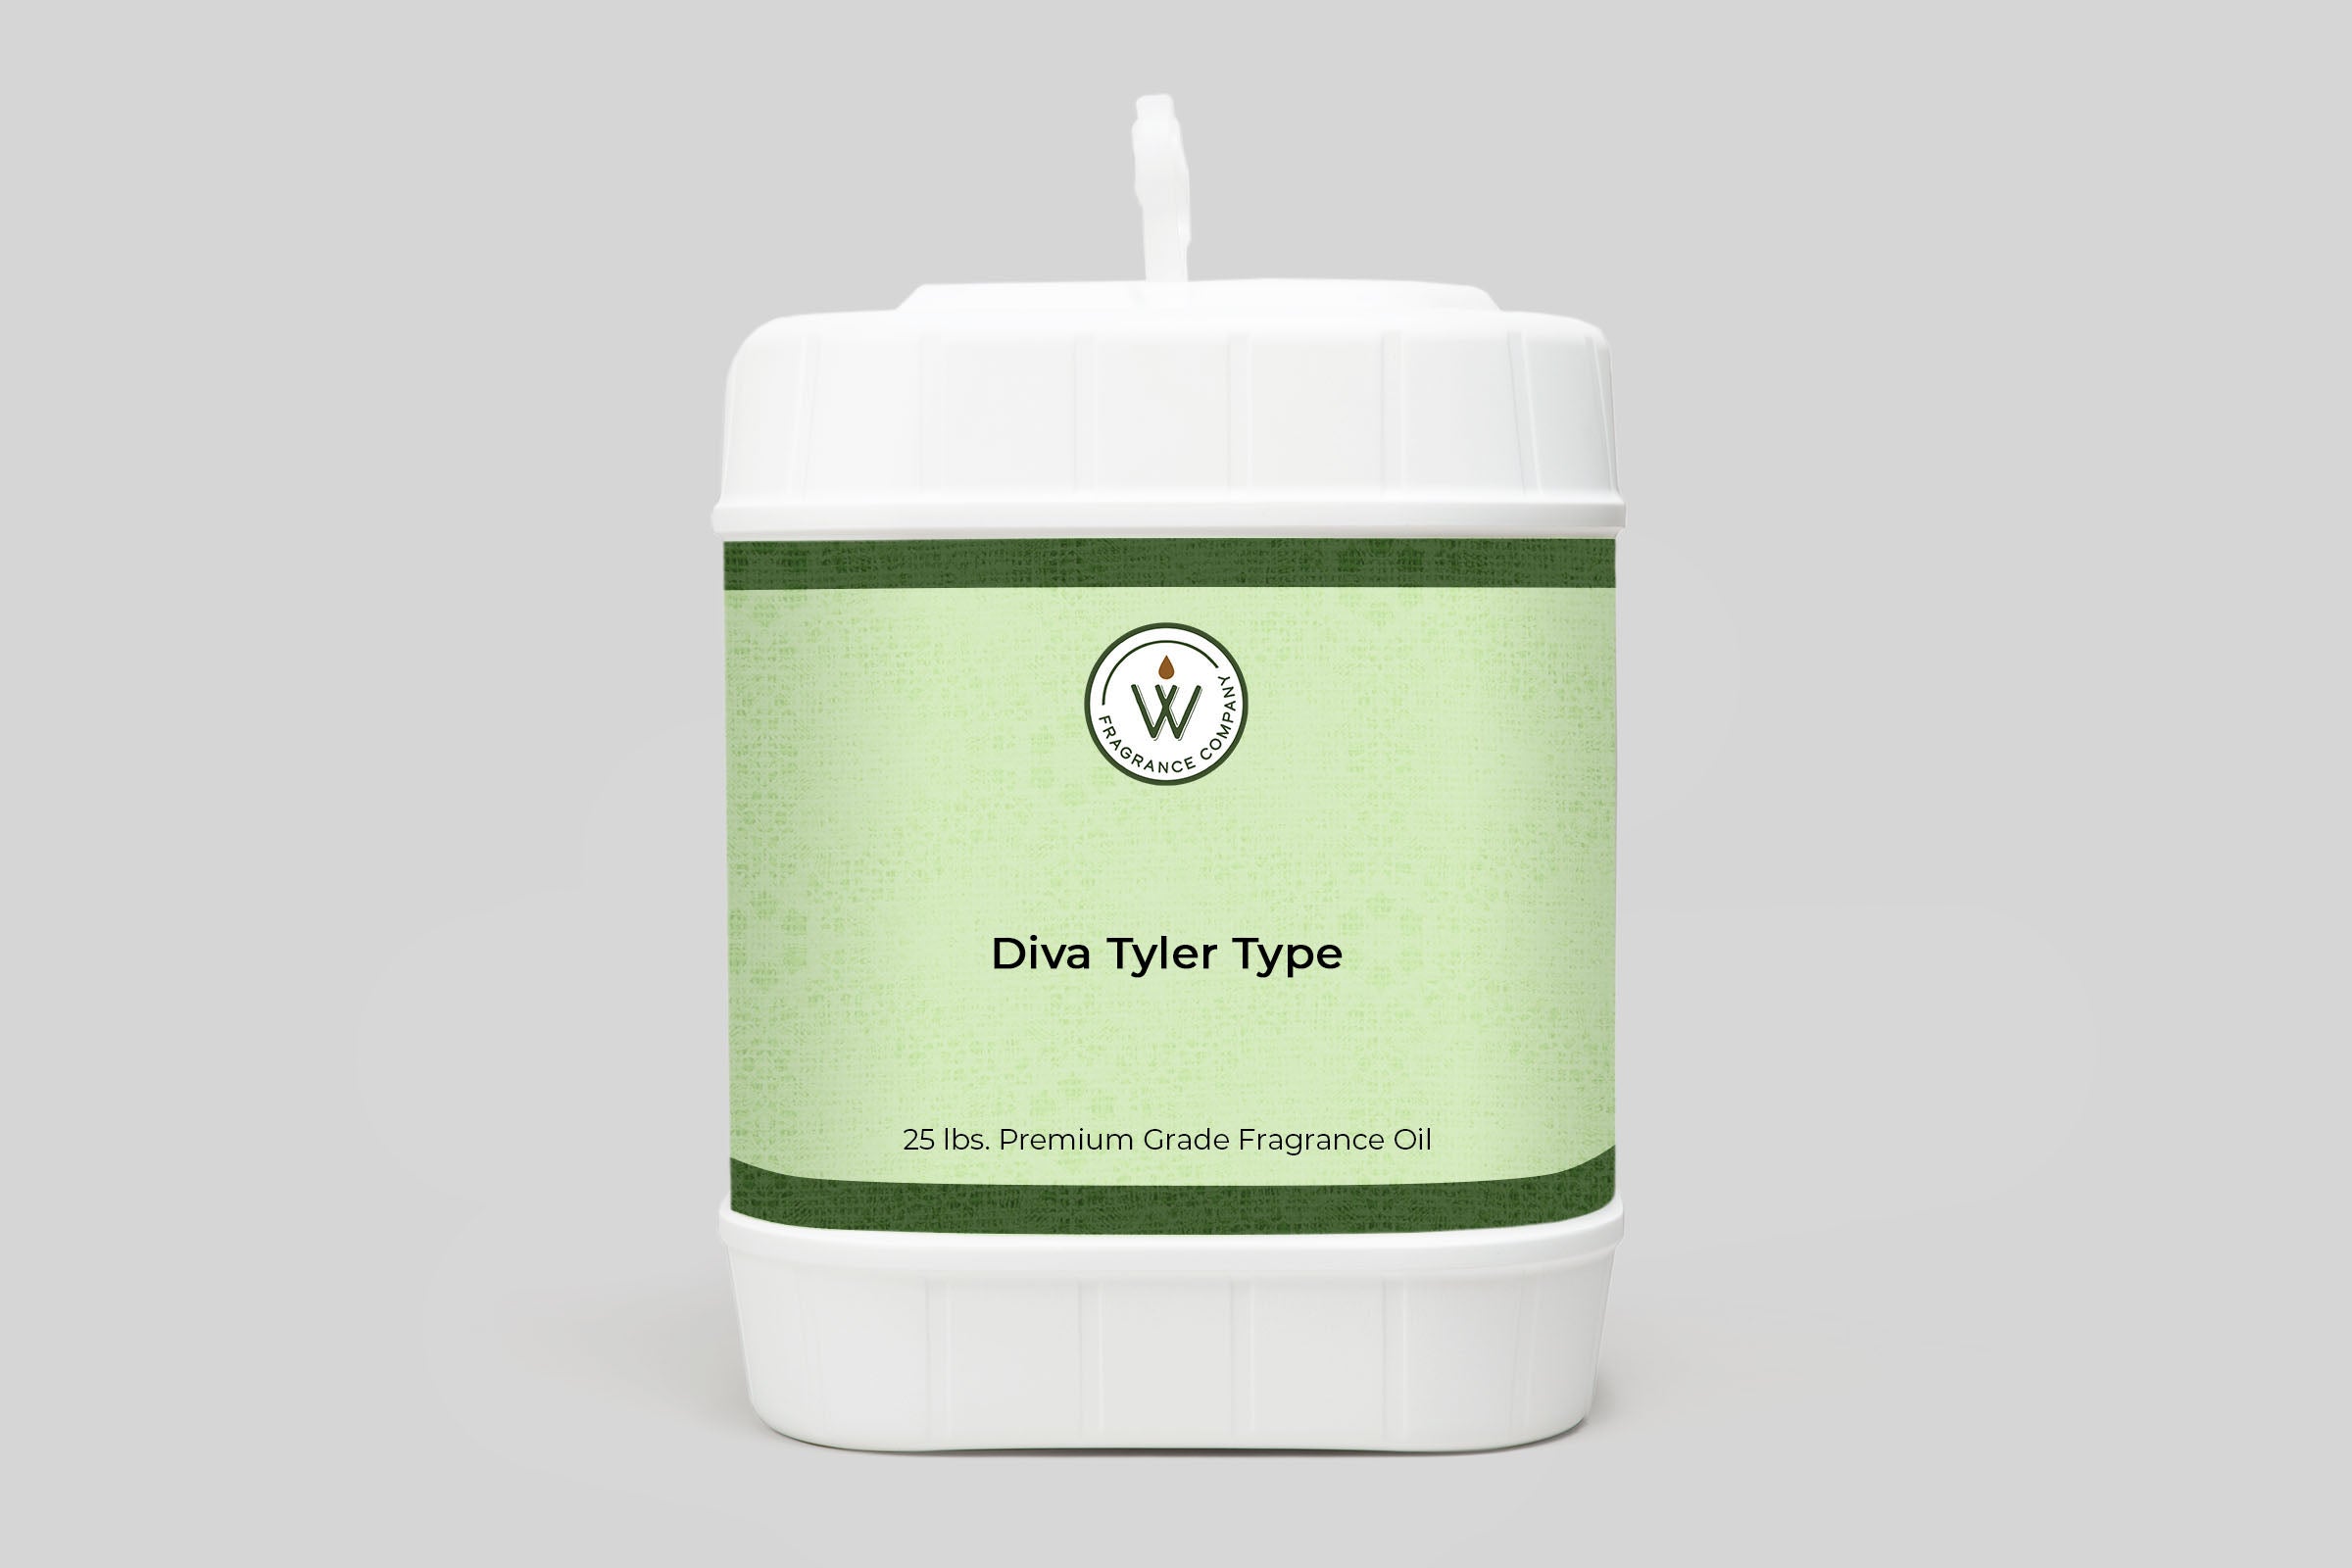 Diva Tyler Type Fragrance Oil